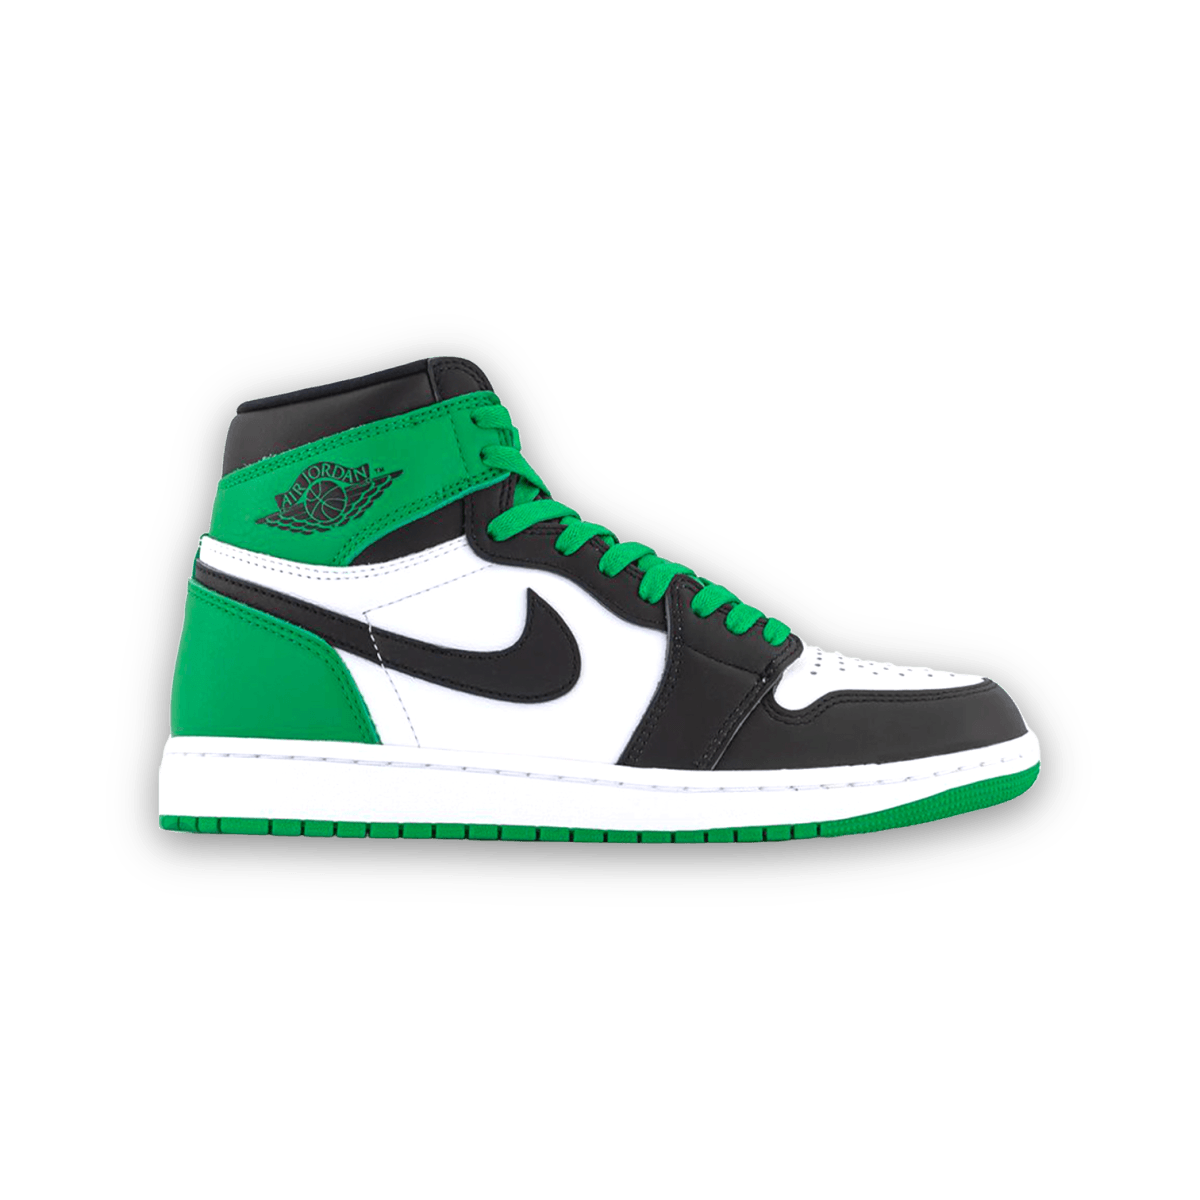 Air Jordan 1 High OG Lucky Green - High Sneaker - Jawns on Fire Sneakers & Streetwear